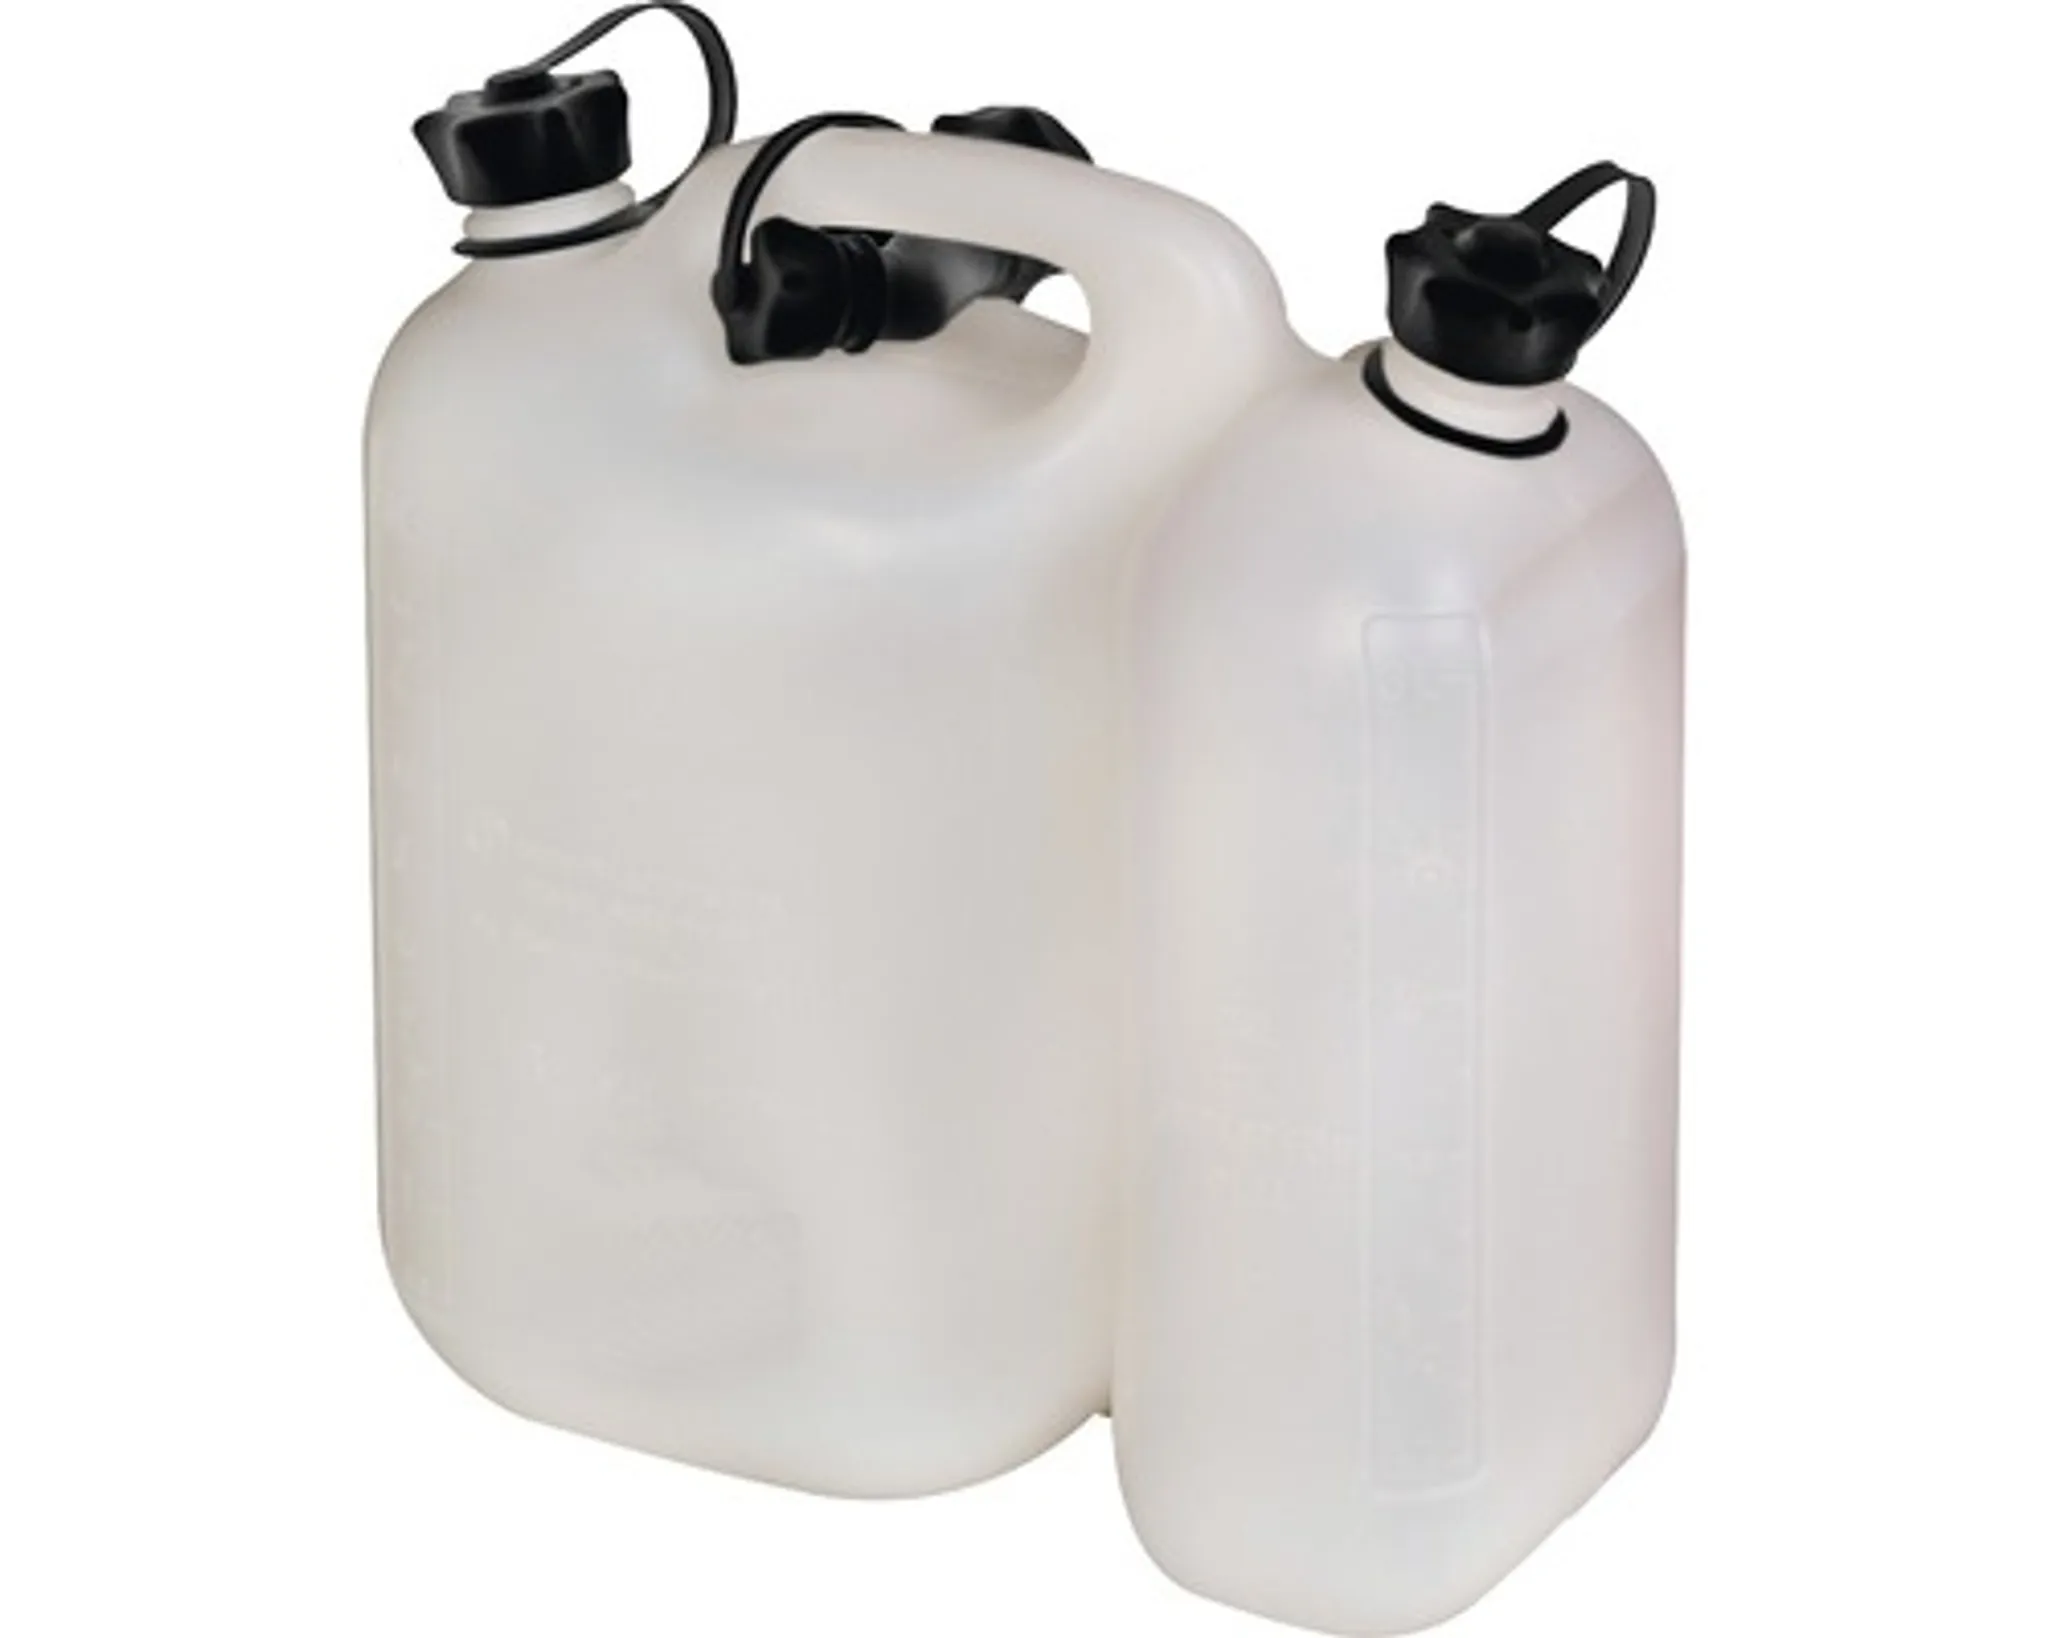 Kombi-Kanister für 3 Liter Öl und 5 Liter